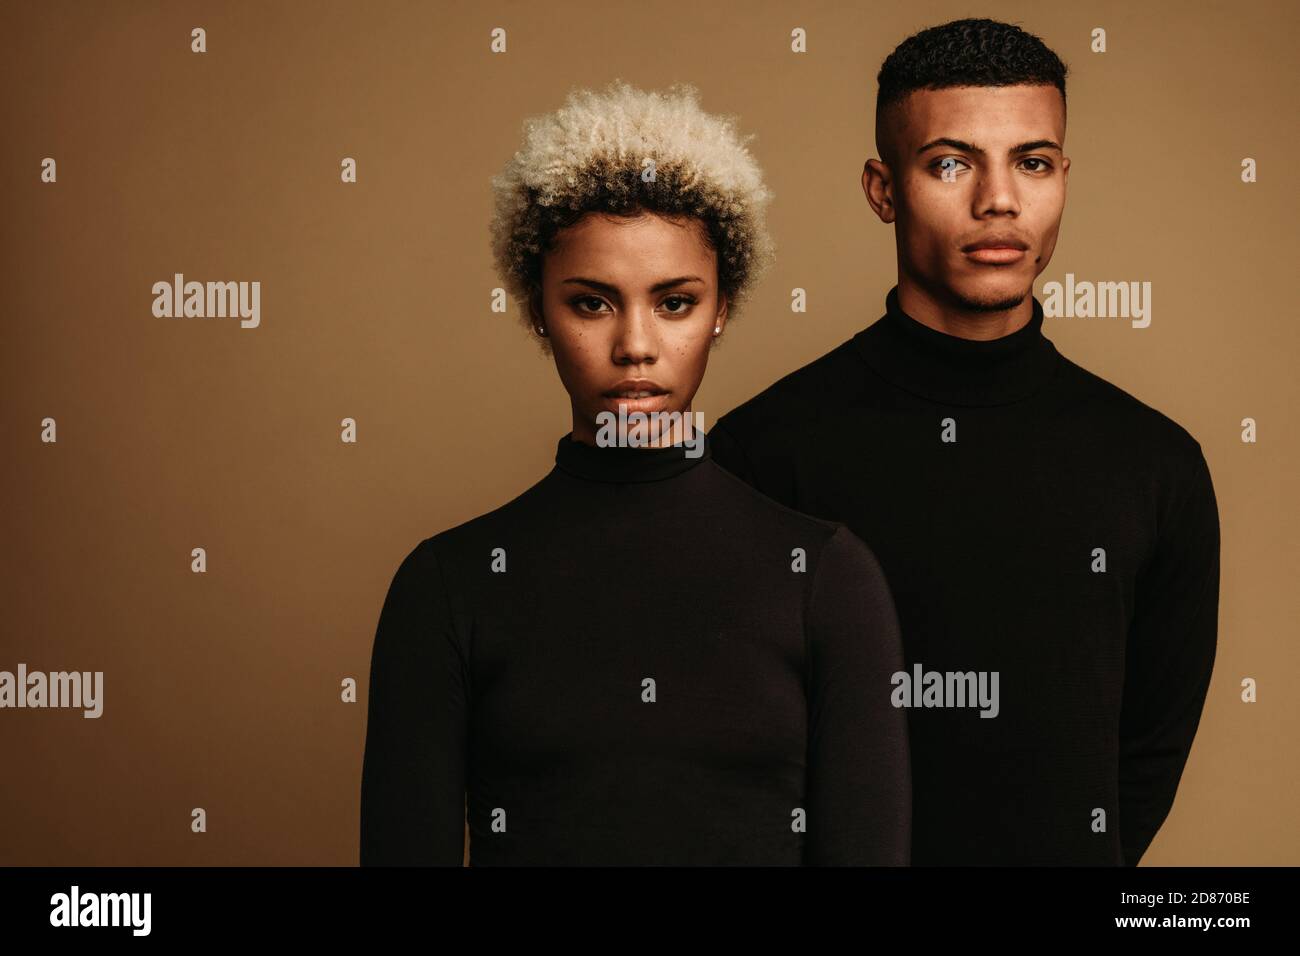 Nahaufnahme von ernsthaft aussehenden afroamerikanischen Mann und Frau. afroamerikanisches Paar auf braunem Hintergrund in schwarzer Kleidung. Stockfoto